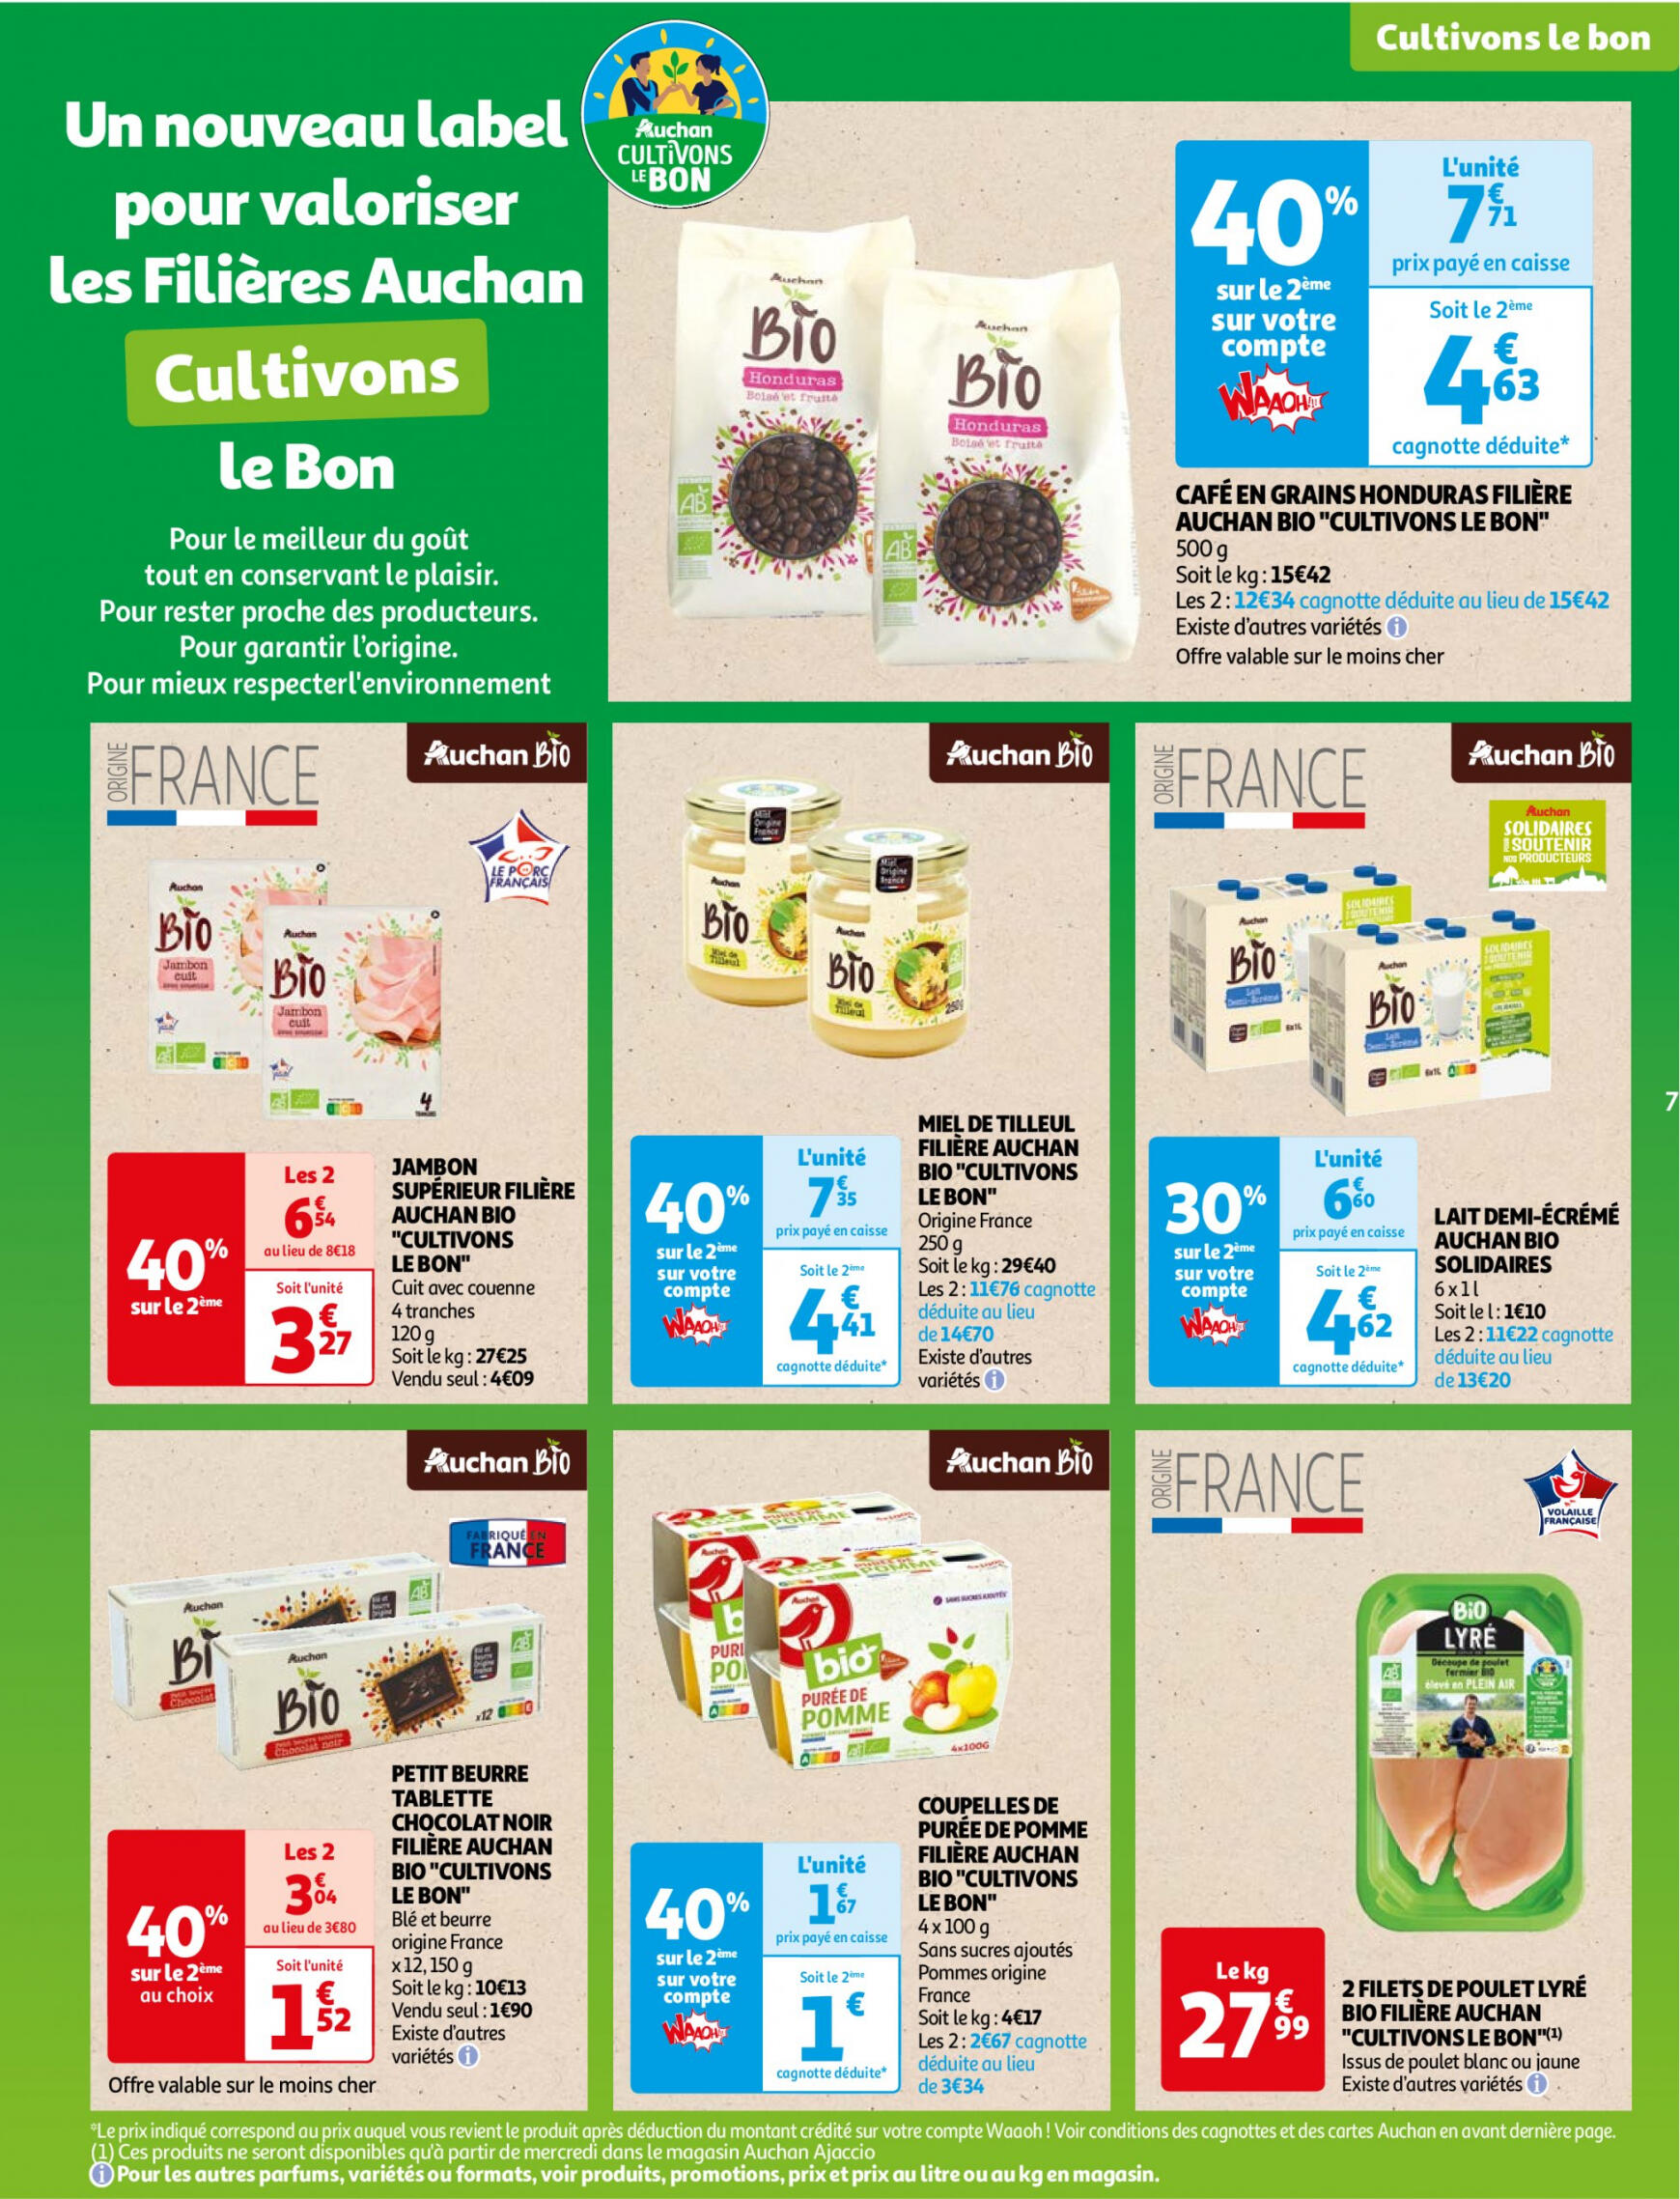 auchan - Auchan - Faites le plein de bio à prix bas folder huidig 22.05. - 03.06. - page: 7